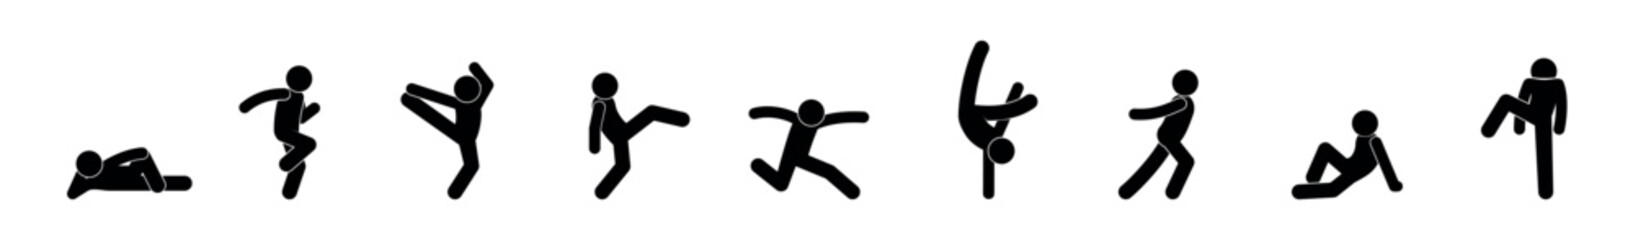 Fototapeta na wymiar man icon, gymnastics symbol, human silhouettes isolated